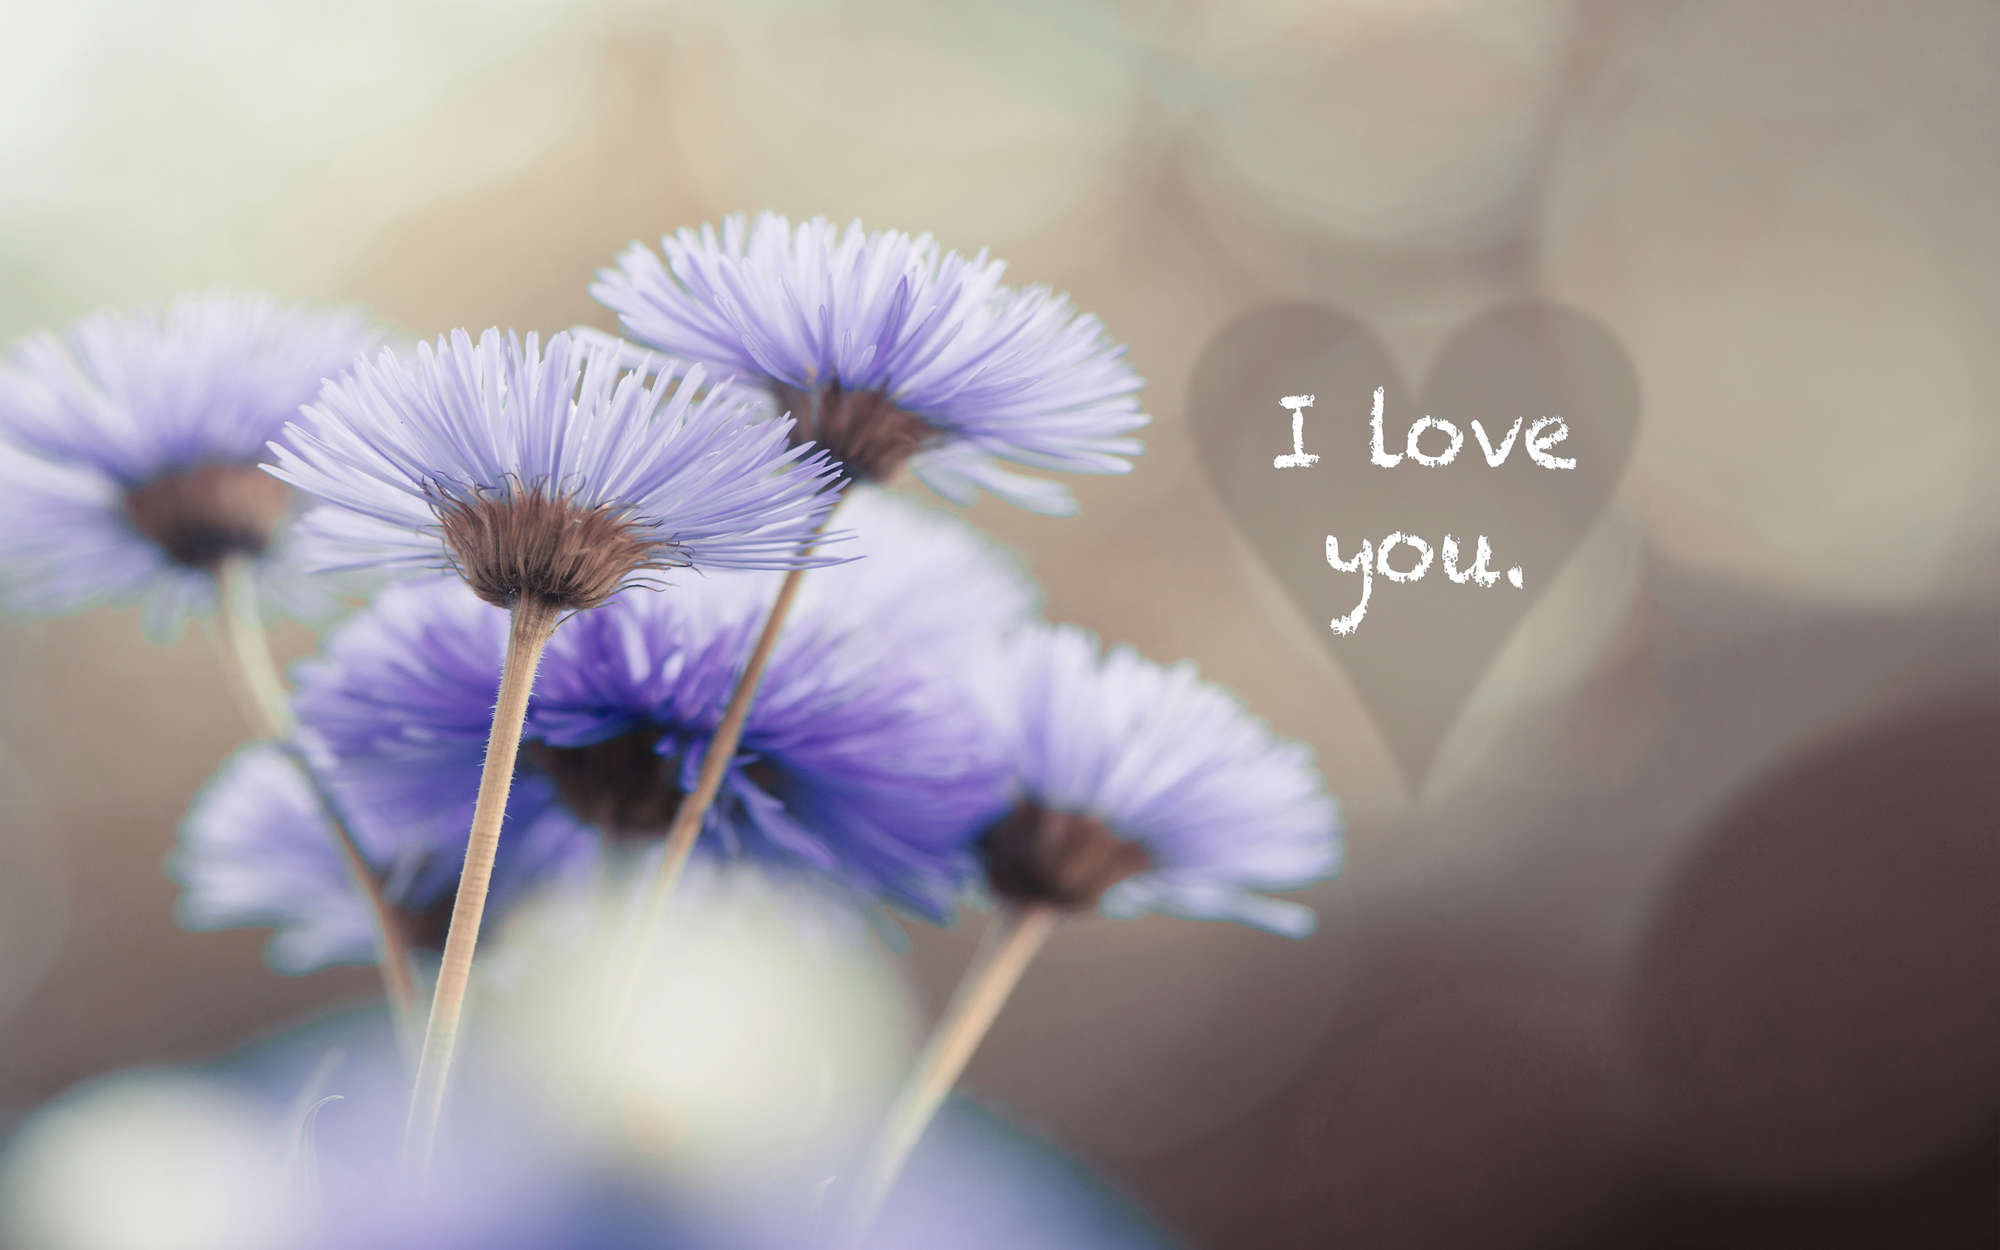             Fototapete Blumen in Violett mit Schriftzug "I love you" – Mattes Glattvlies
        